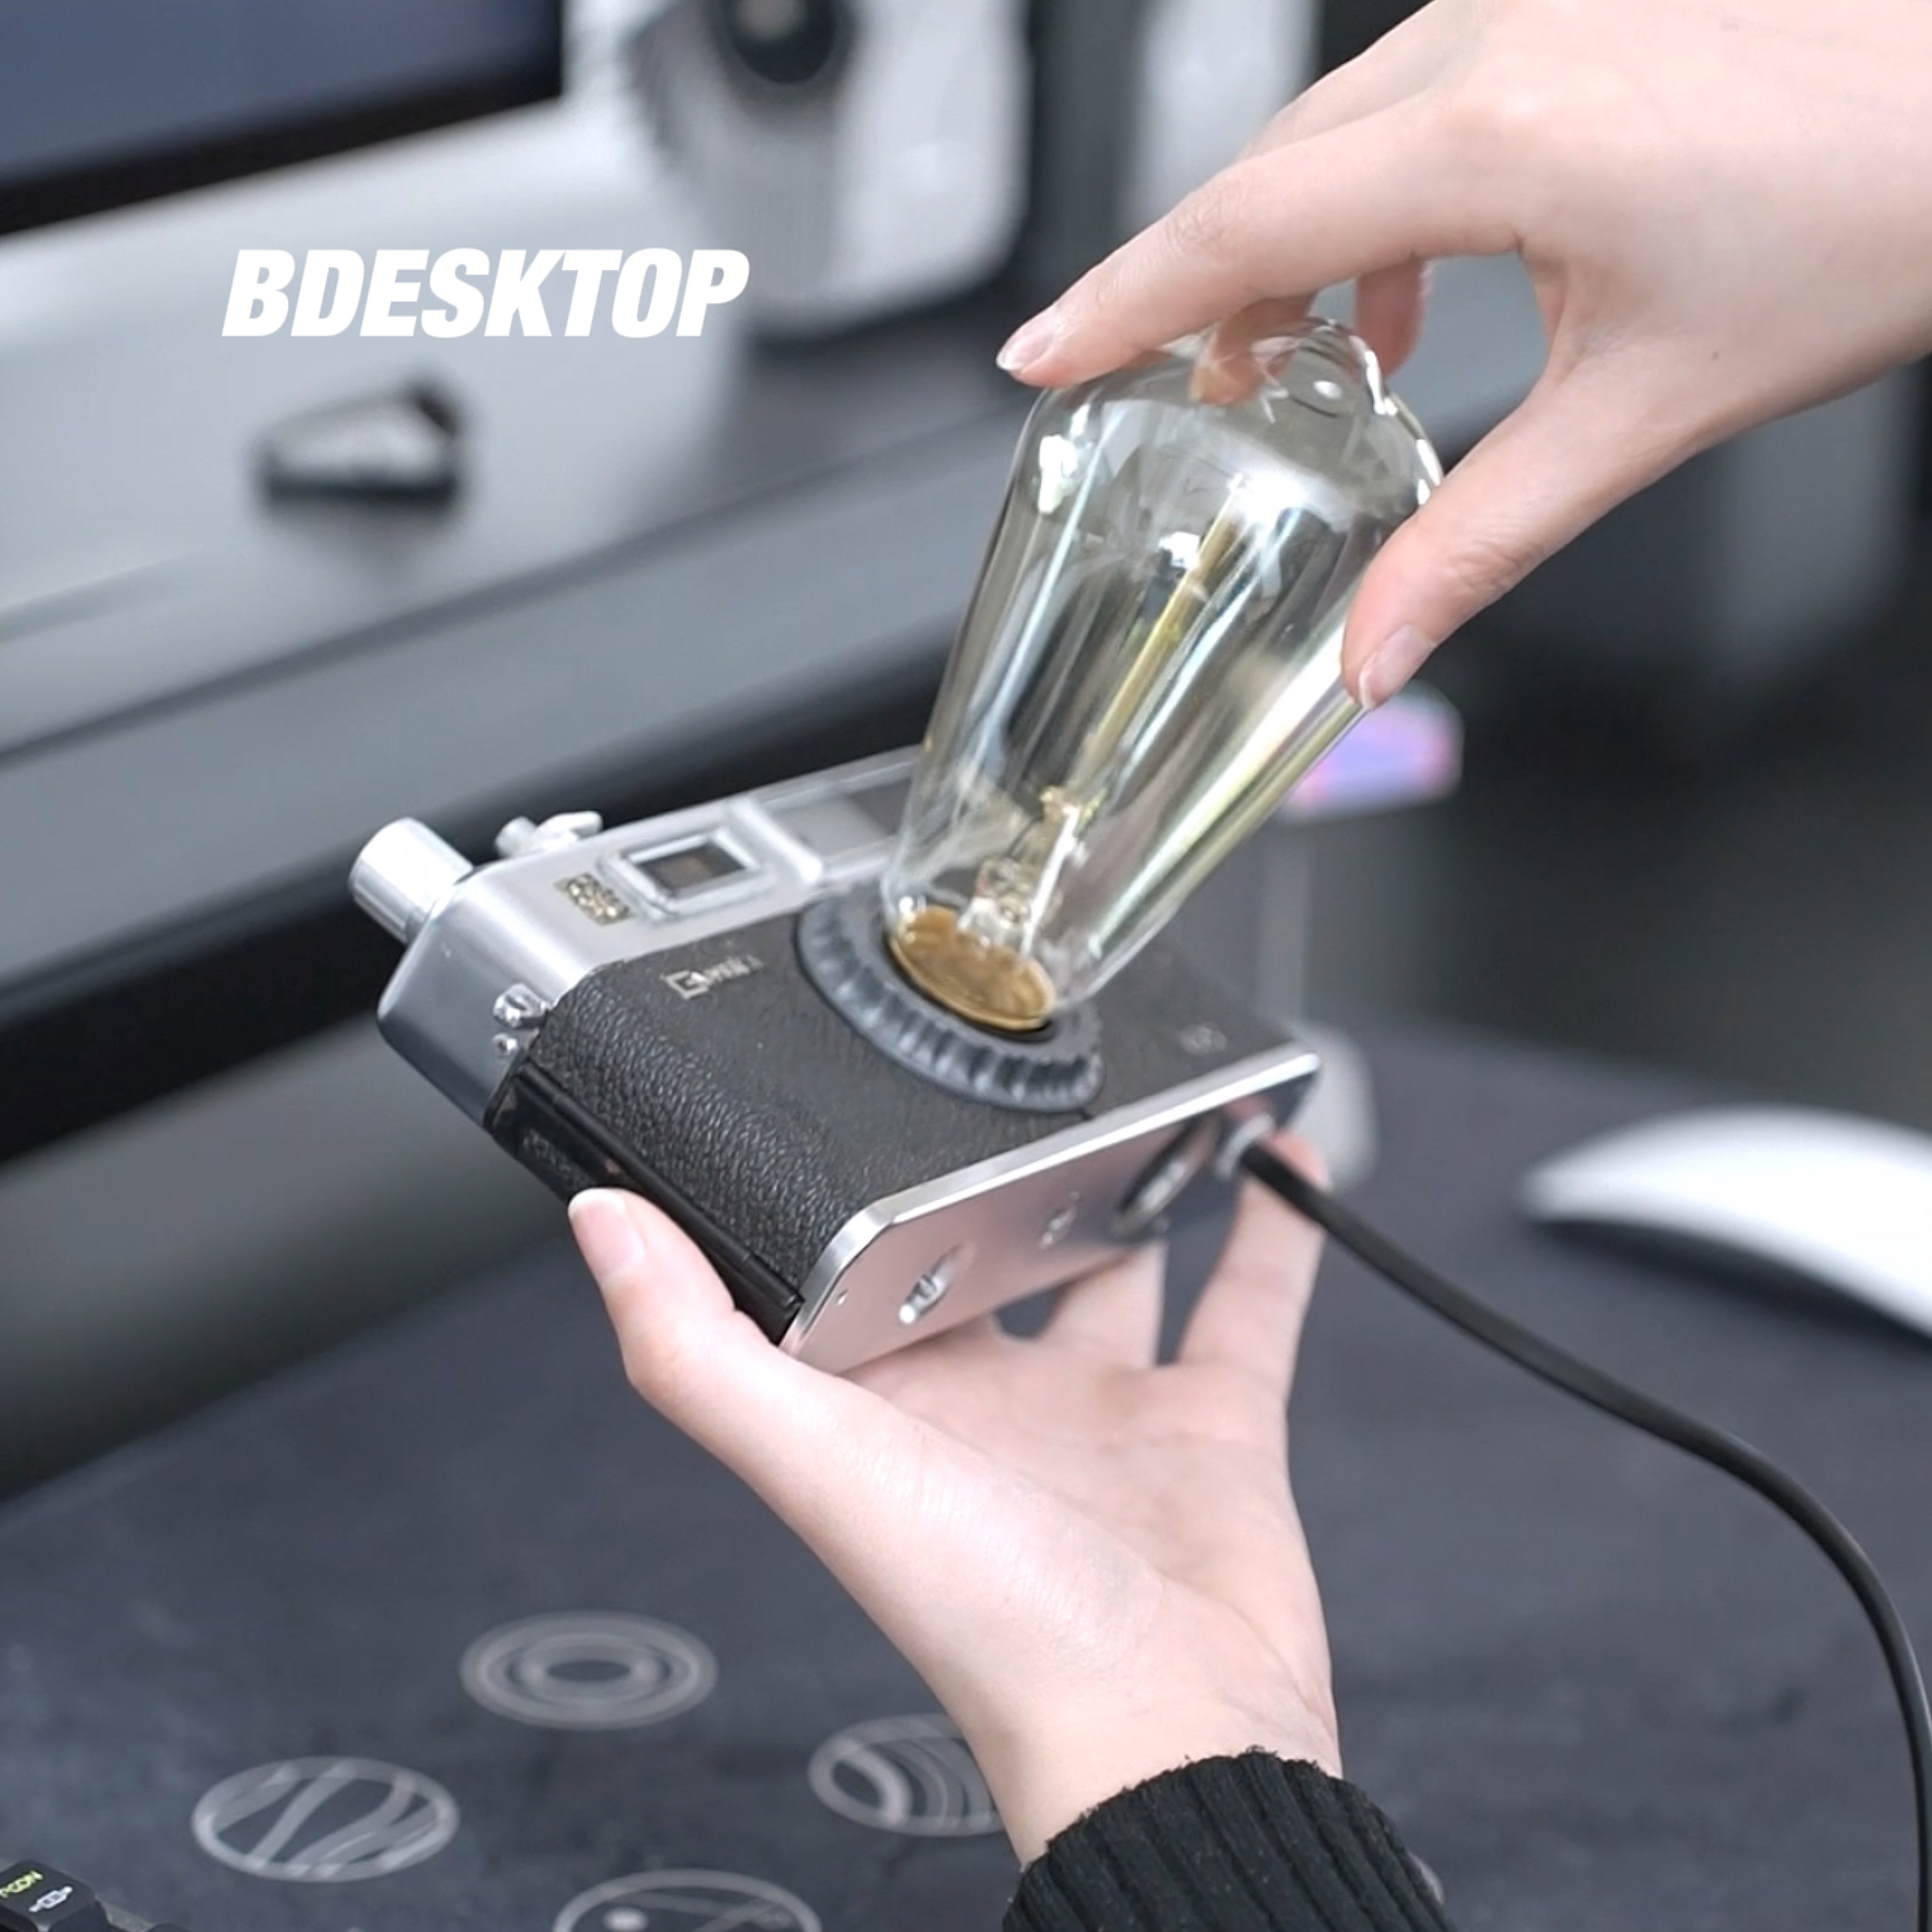 Bdesktop Design Shop｜Film Rangefinder Camera Desk Lamp Decorative Ambient Light